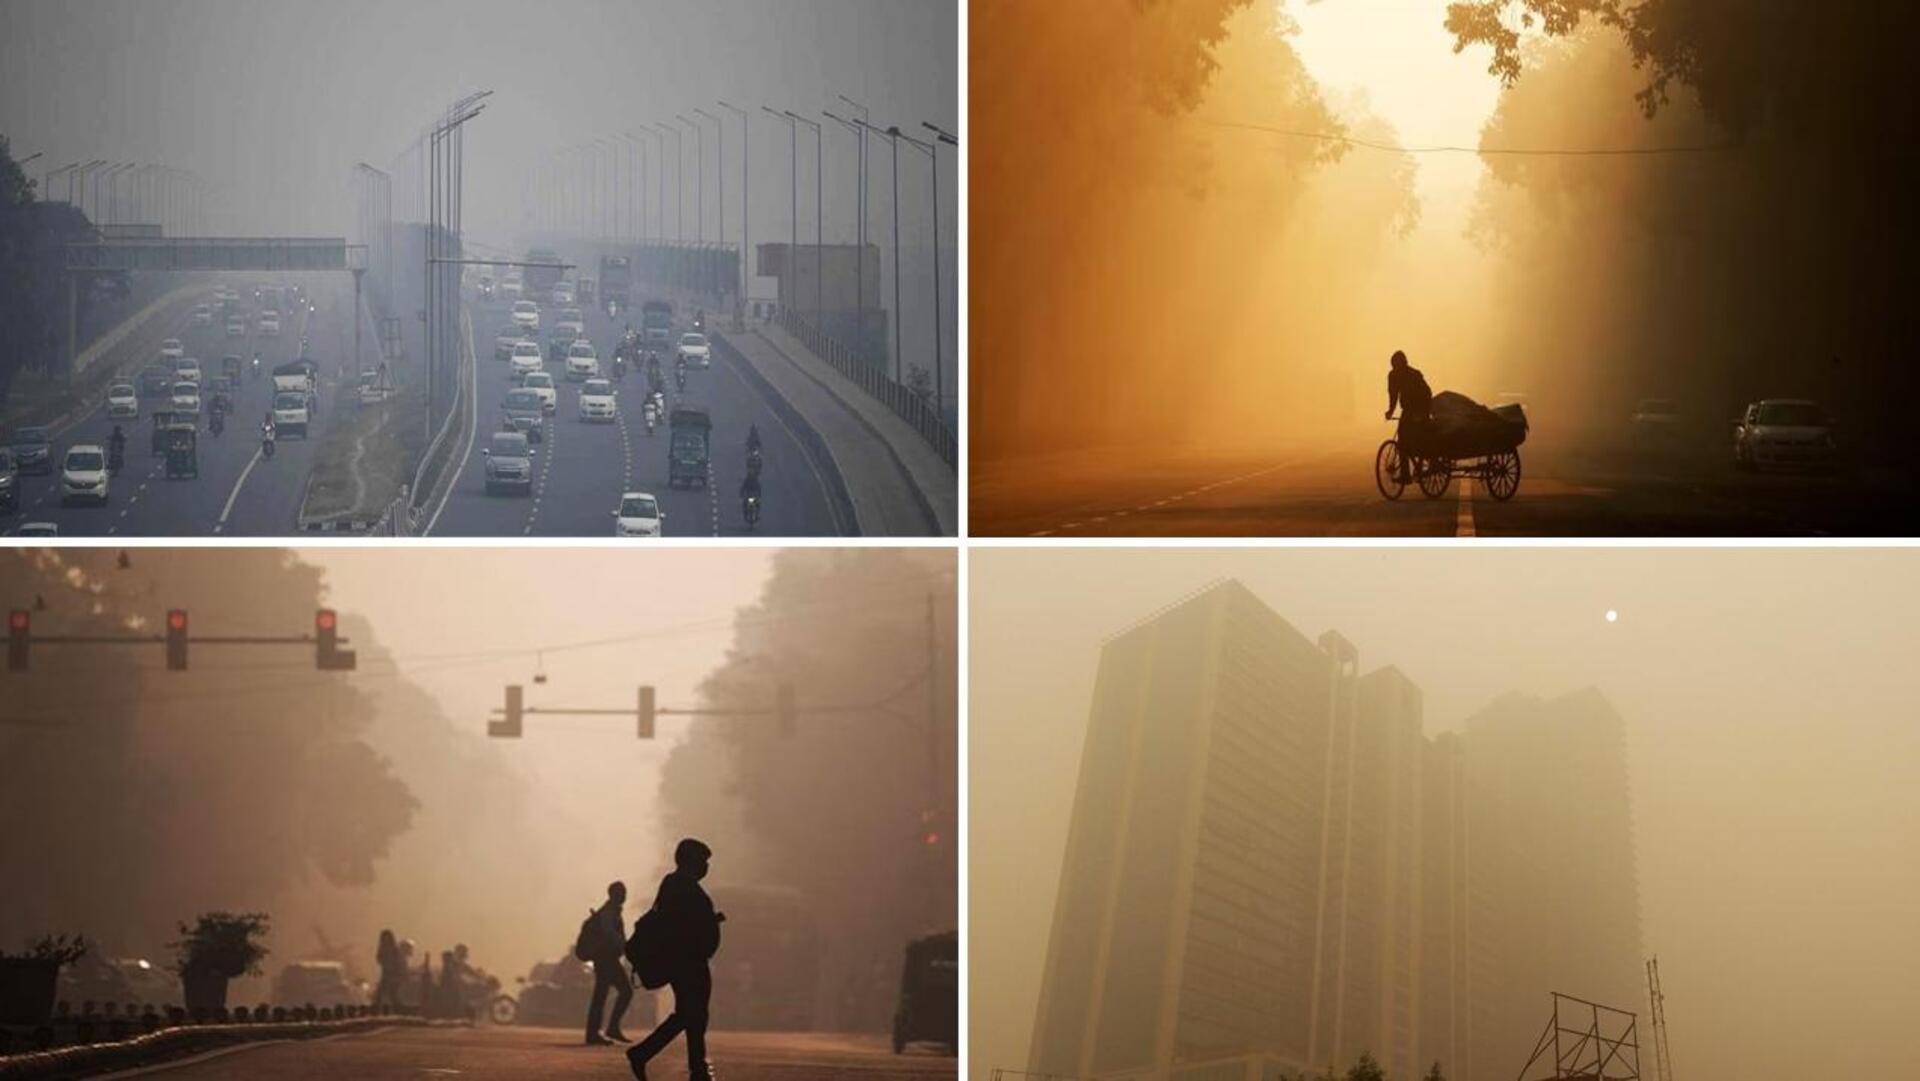 दिल्ली-NCR में वायु गुणवत्ता 'बेहद खराब', पड़ोसी राज्यों में पराली जलाने से बिगड़ सकते हैं हालात